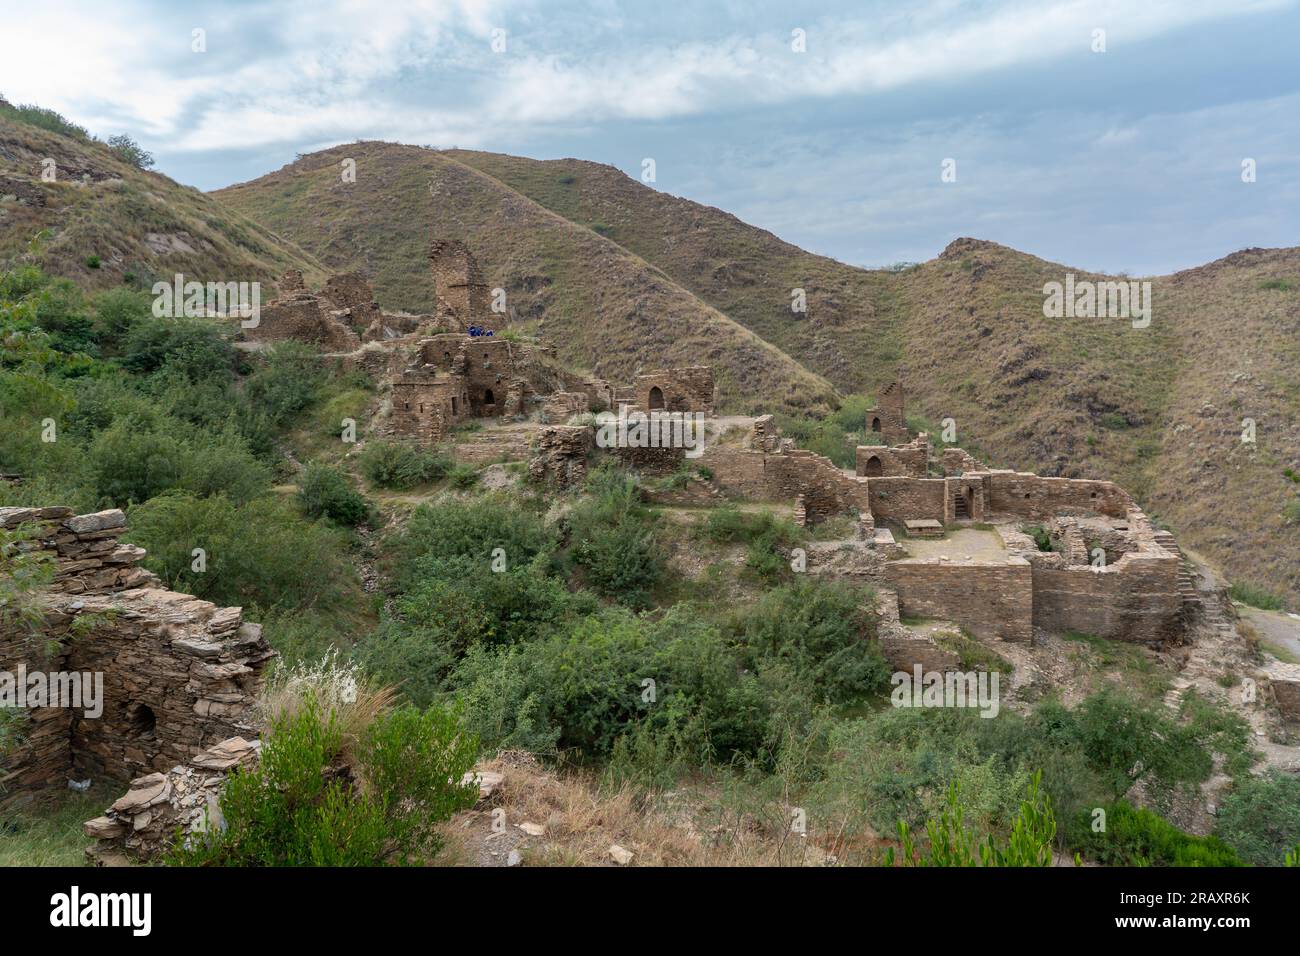 Vue de l'ancien monastère bouddhiste Takht-i-Bahi ou Takht Bhai de l'ère Gandhara, site du patrimoine mondial de l'UNESCO à Mardan, Khyber Pakhtunkhwa, Pakistan Banque D'Images